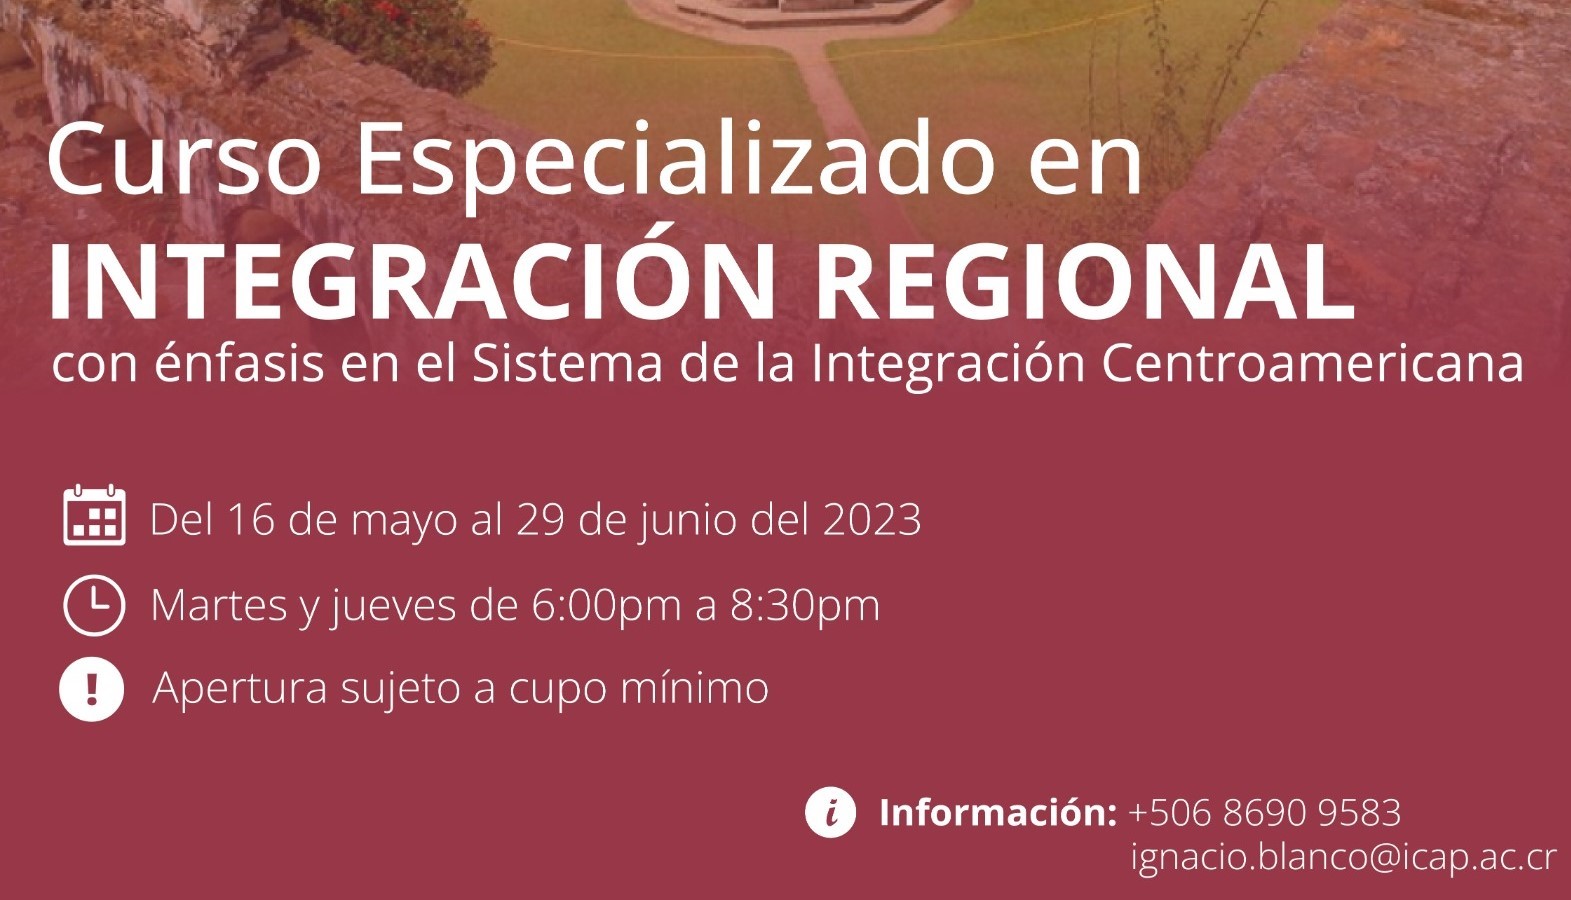 Curso especializado en Integración Regional con énfasis en el Sistema de la Integración Centroamericana